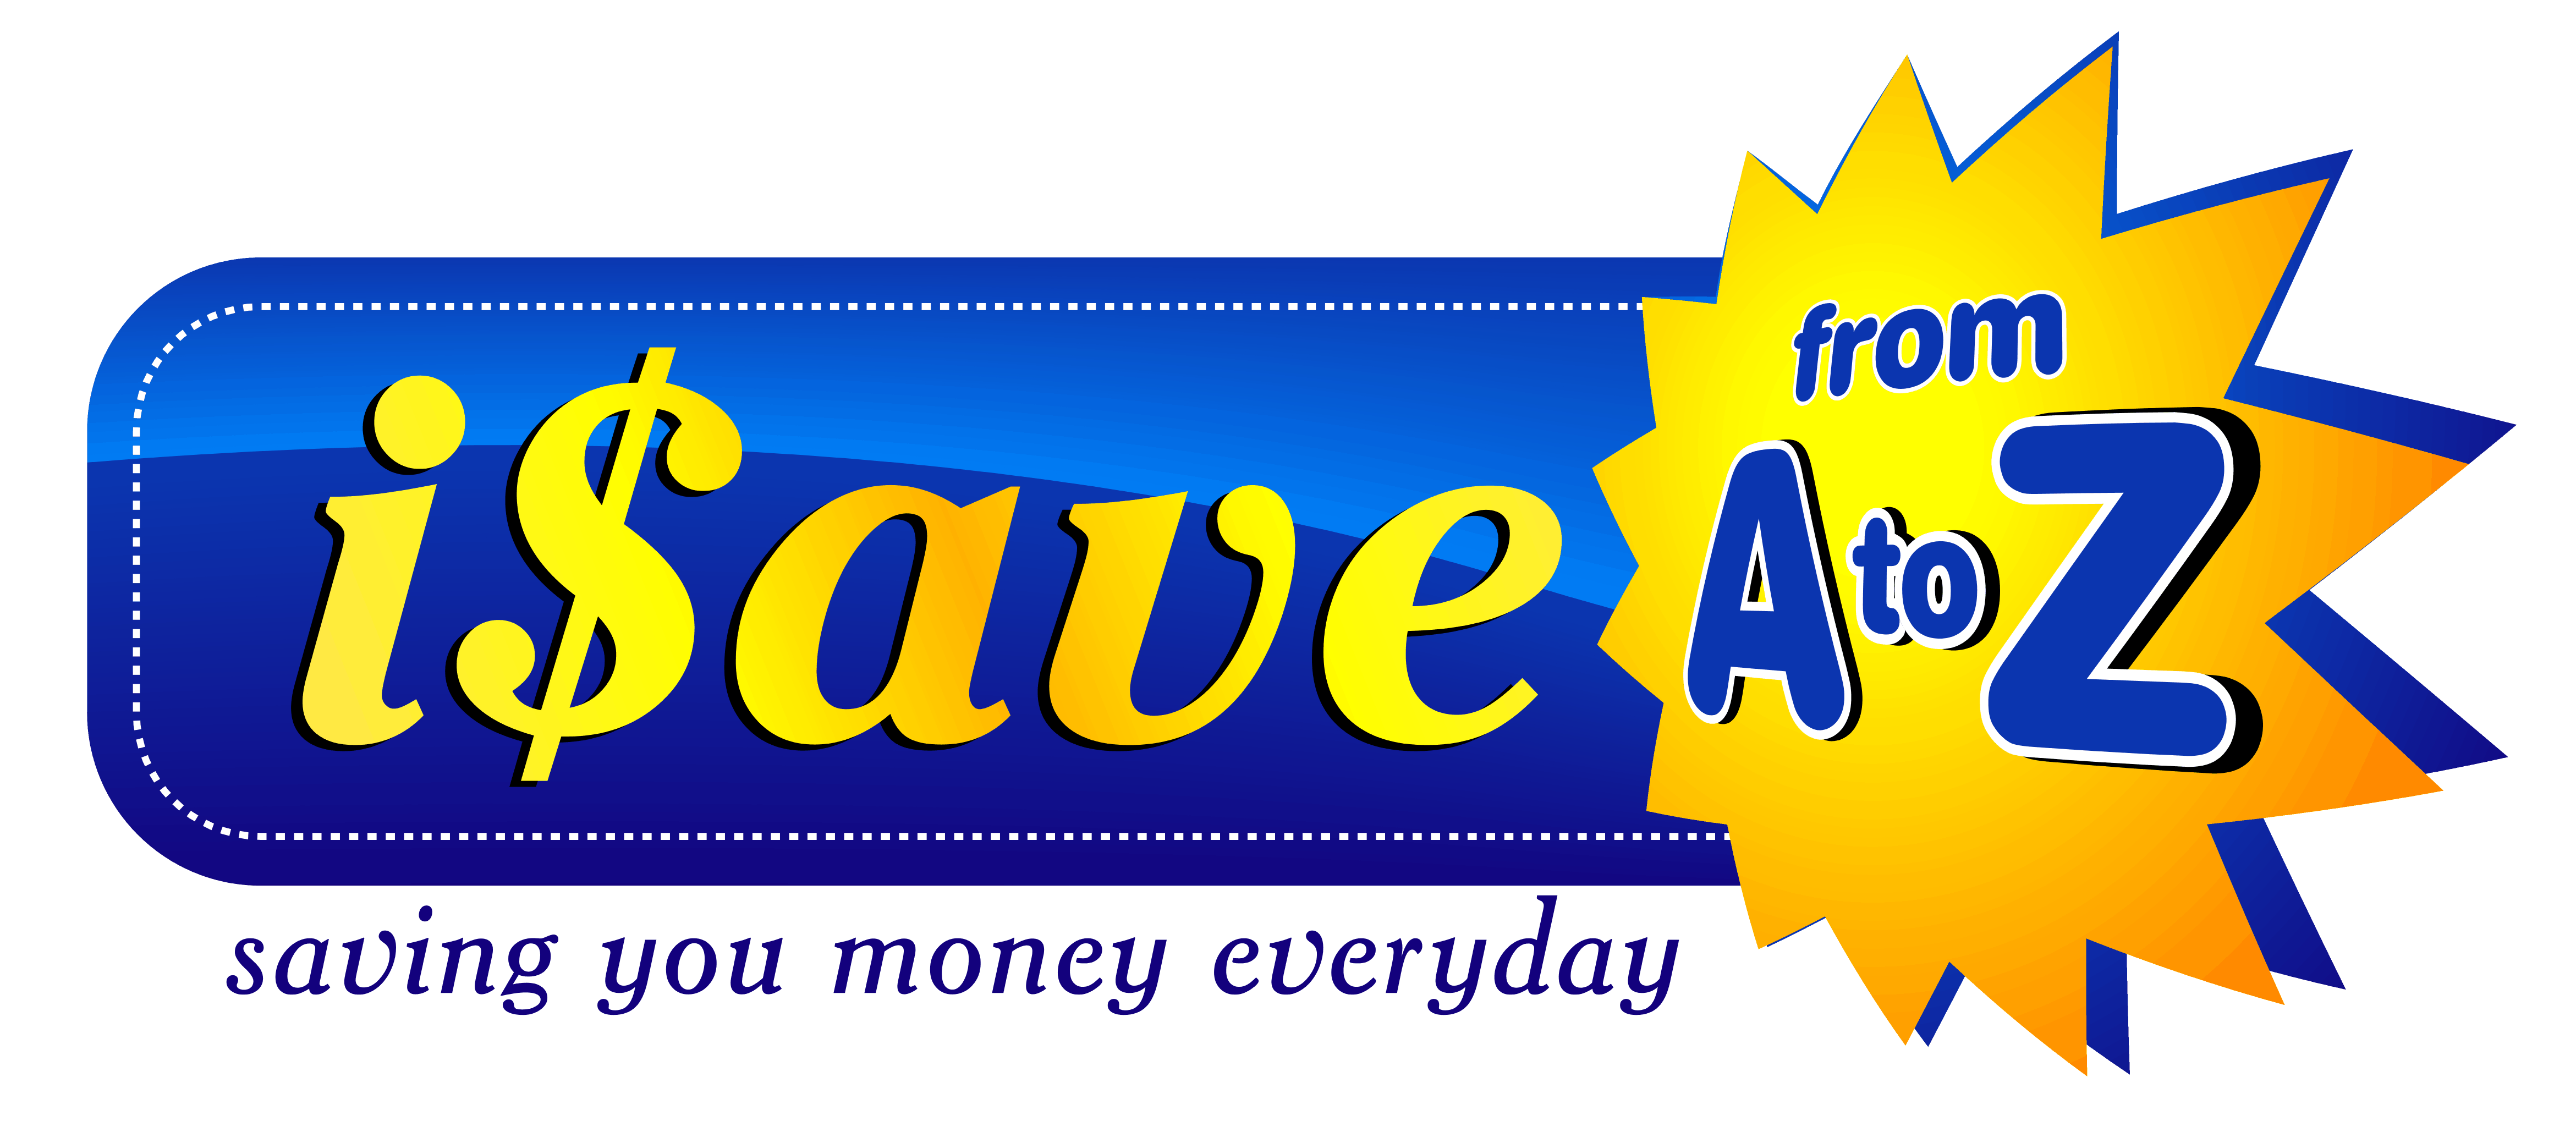 iSaveA2Z.com  Saving you money everyday!